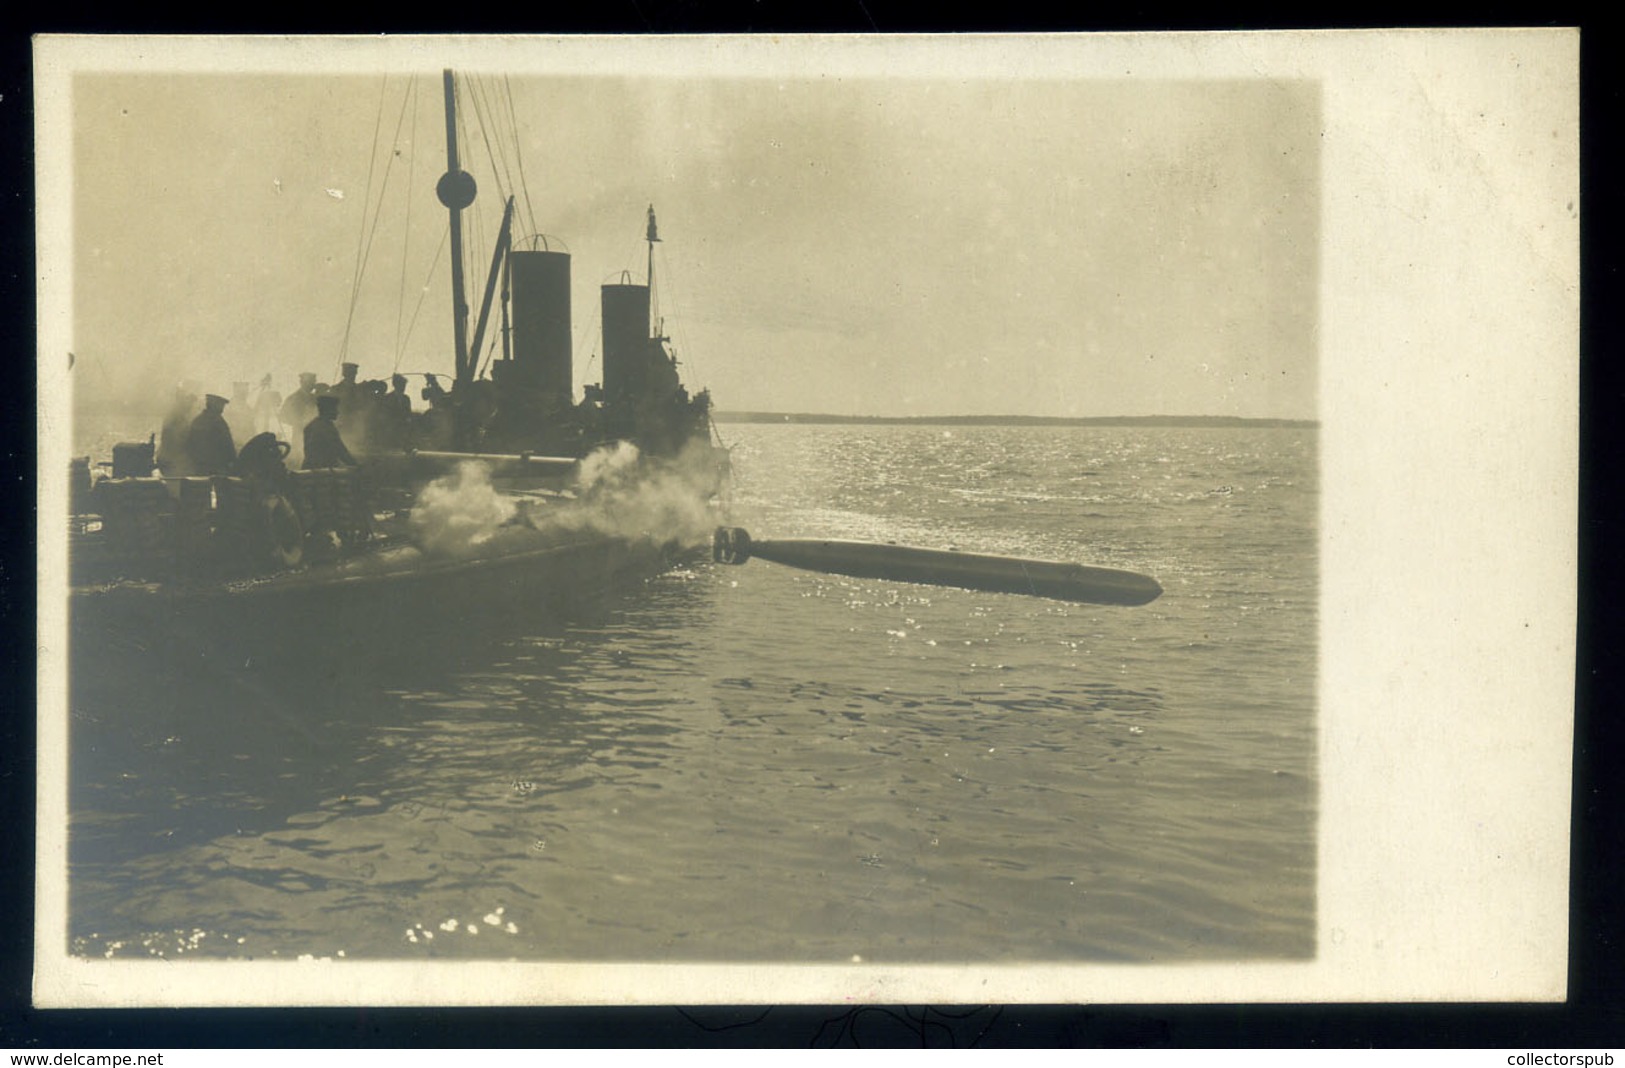 K.u.K. Haditengerészet, Torpedo, érdekes Fotós Képeslap  /  K.u.K. NAVY Torpedo Interesting Photo Vintage Pic. P.card - Hongrie